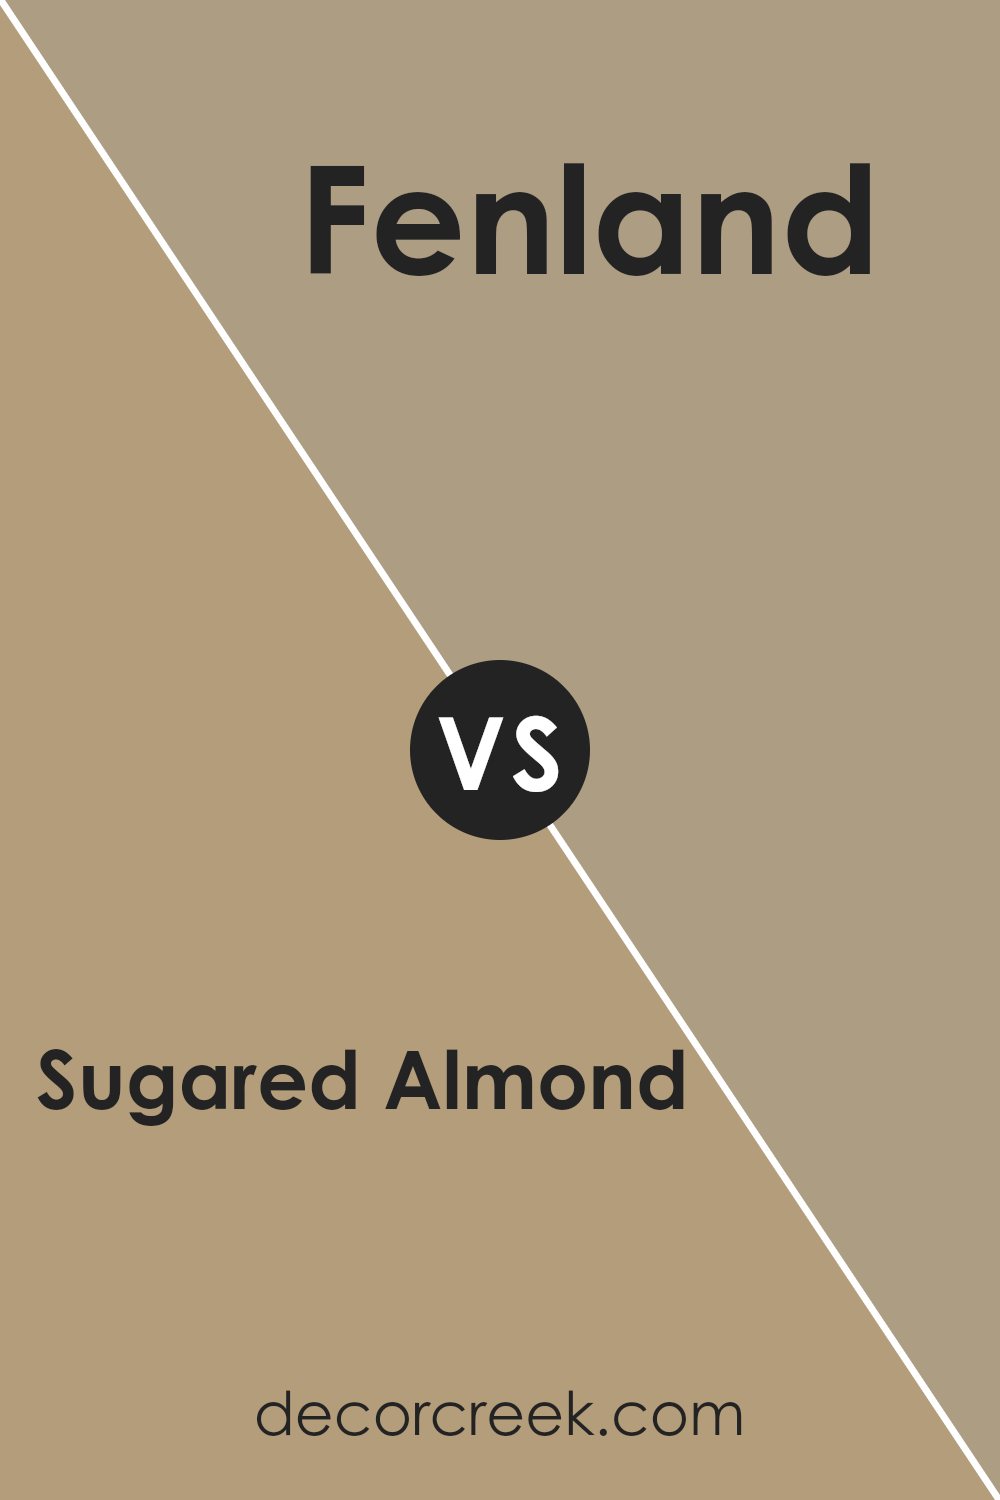 sugared_almond_sw_9537_vs_fenland_sw_7544